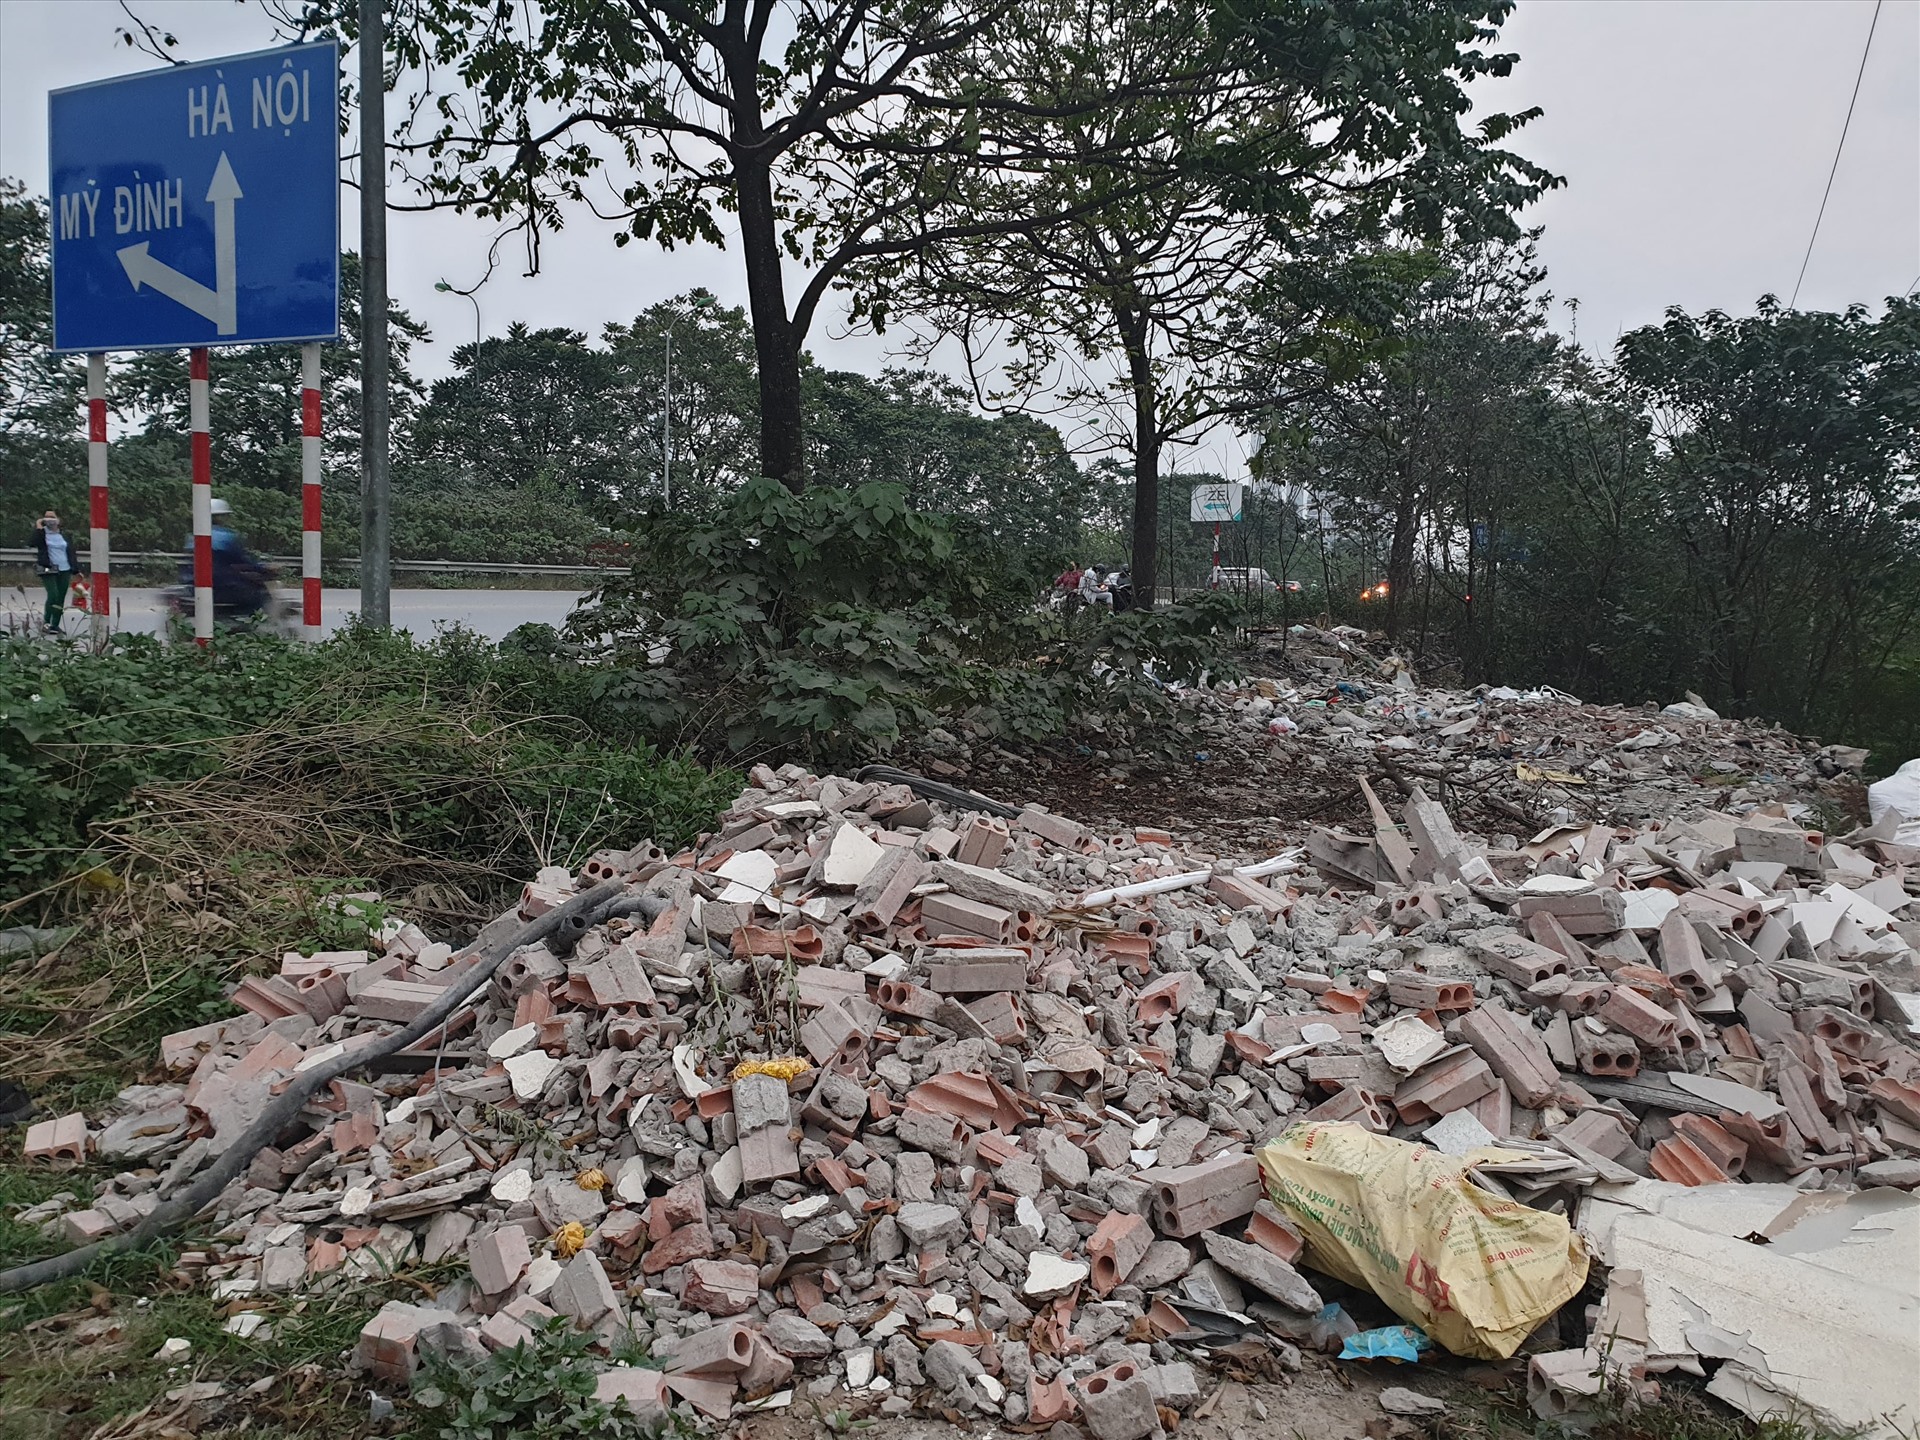 1 lượng lớn phế thải xây dựng gần chùa Giao Quang.